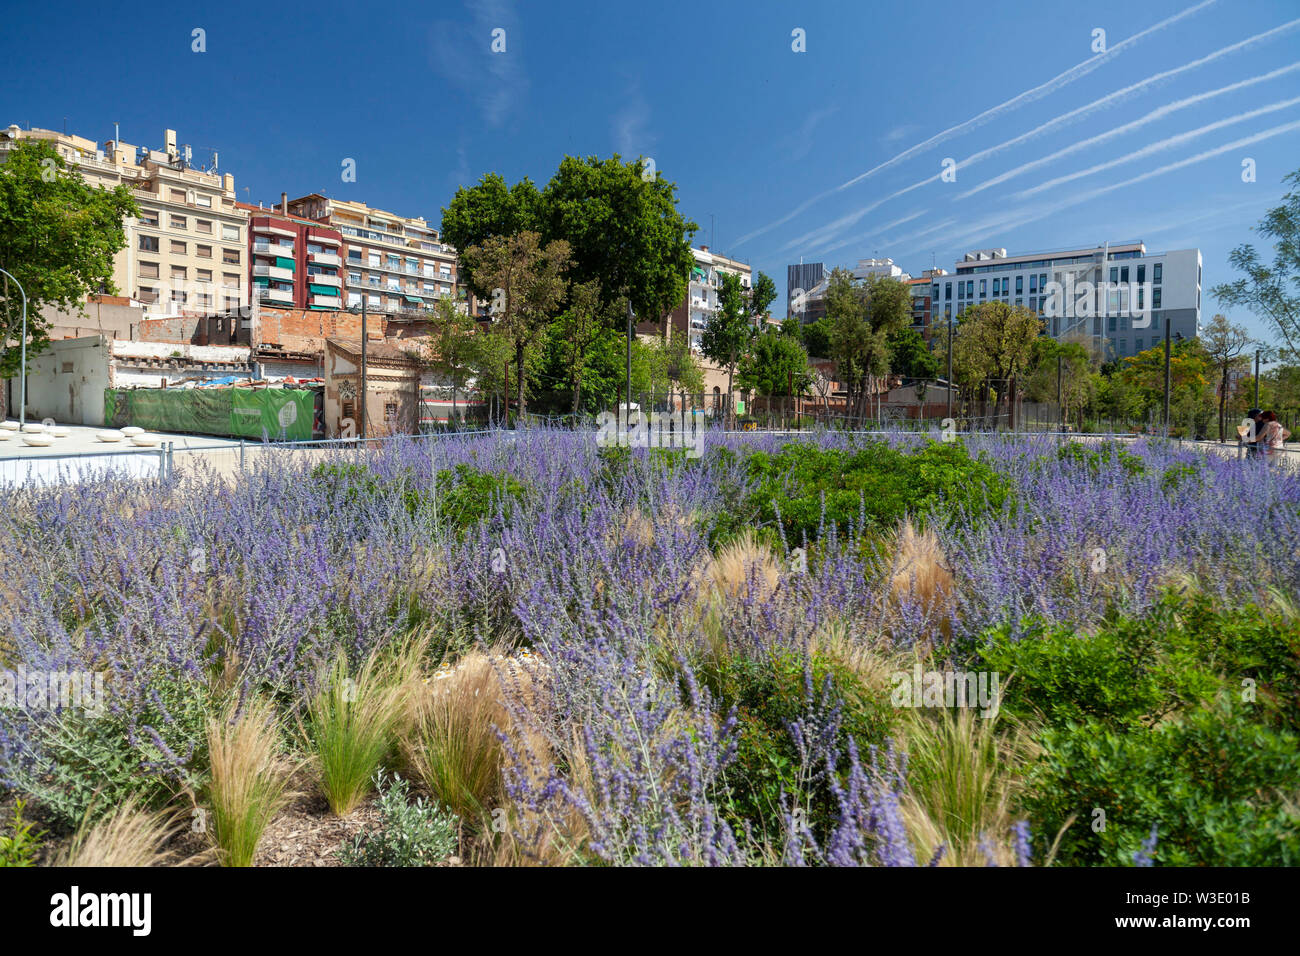 Public Garden Park, Parc de les Glories, Barcelona, Katalonien, Spanien. Stockfoto